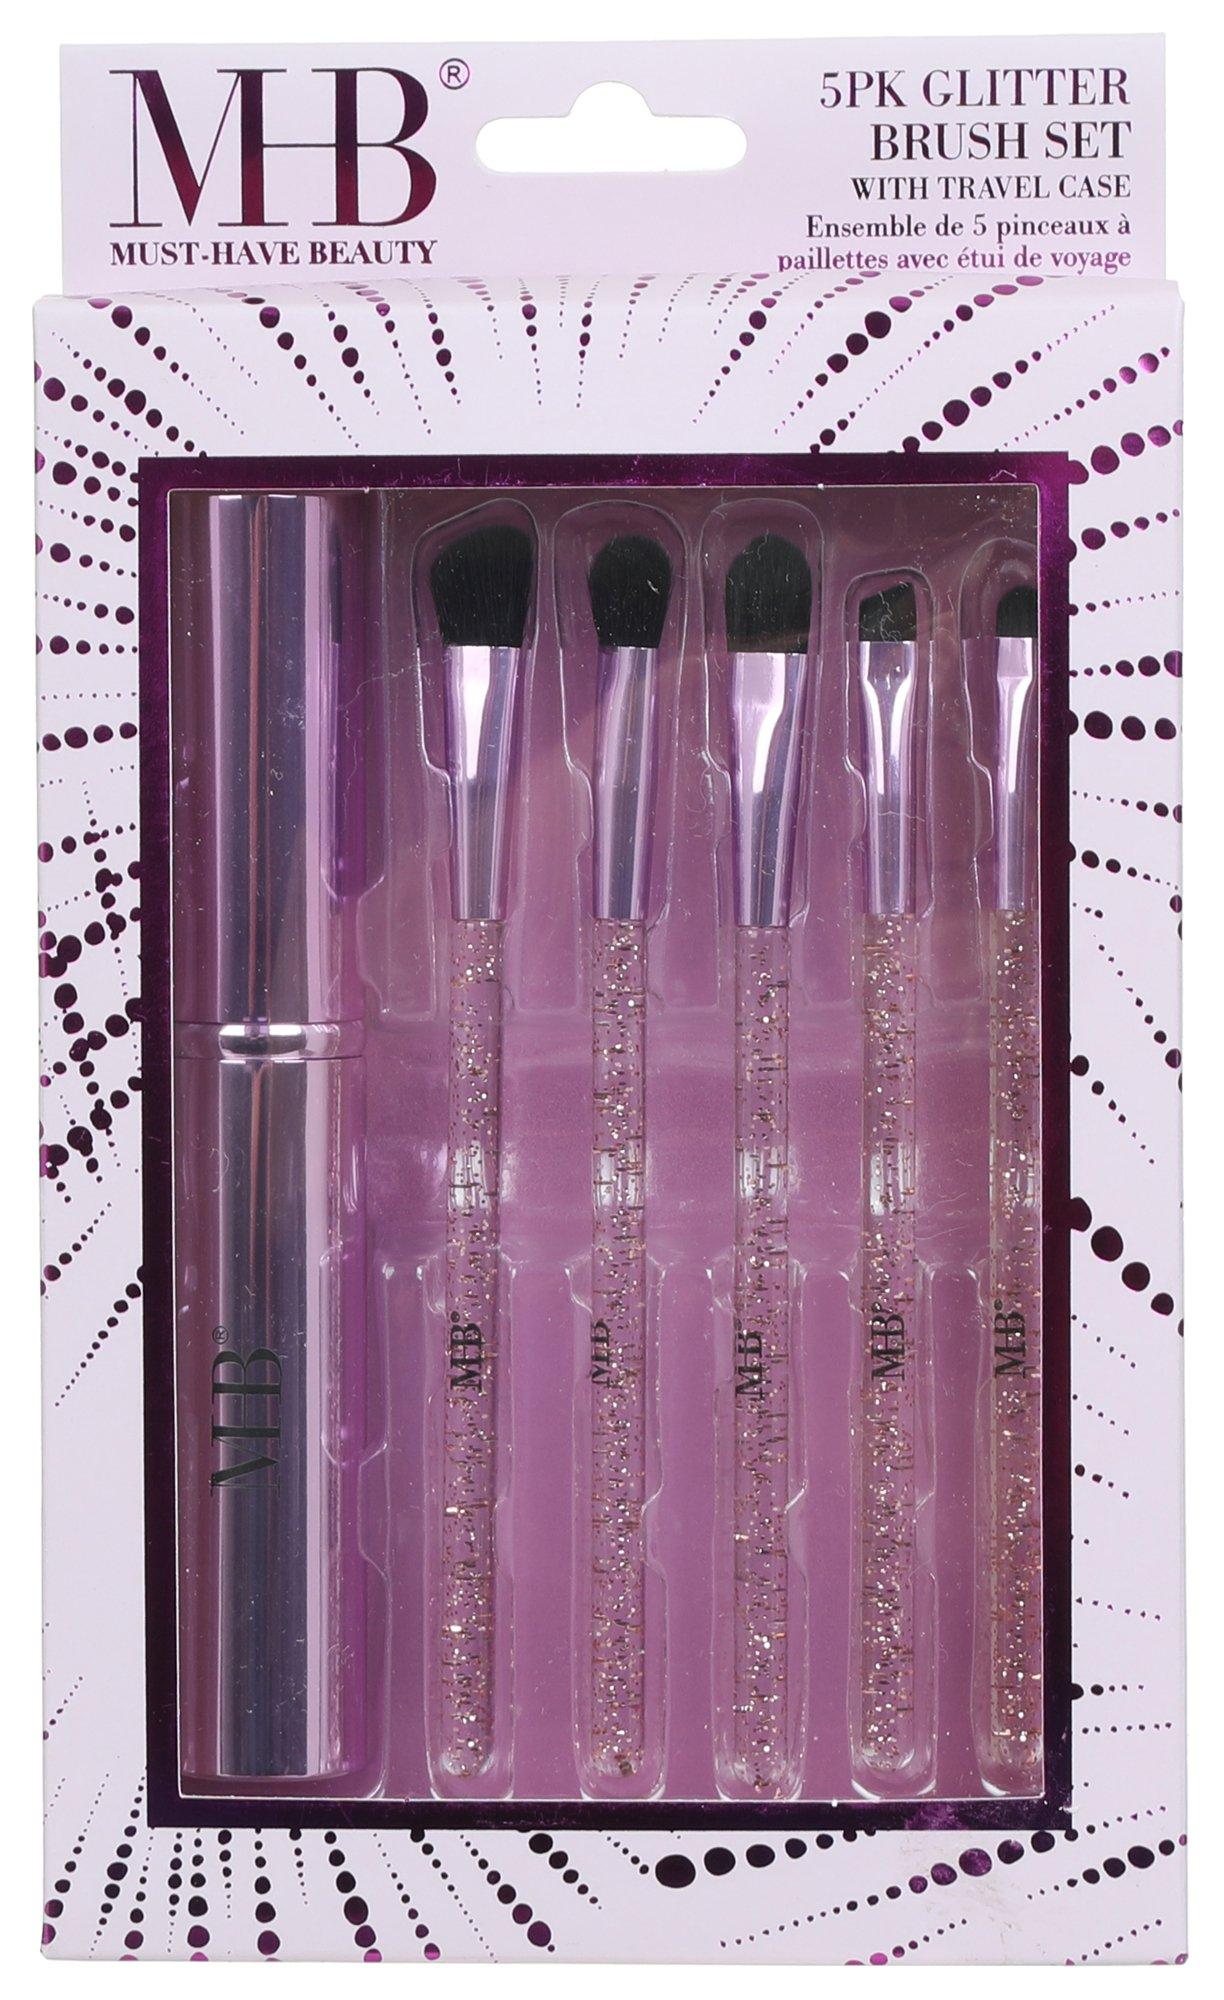 5 Pc Glitter Makeup Brush Set